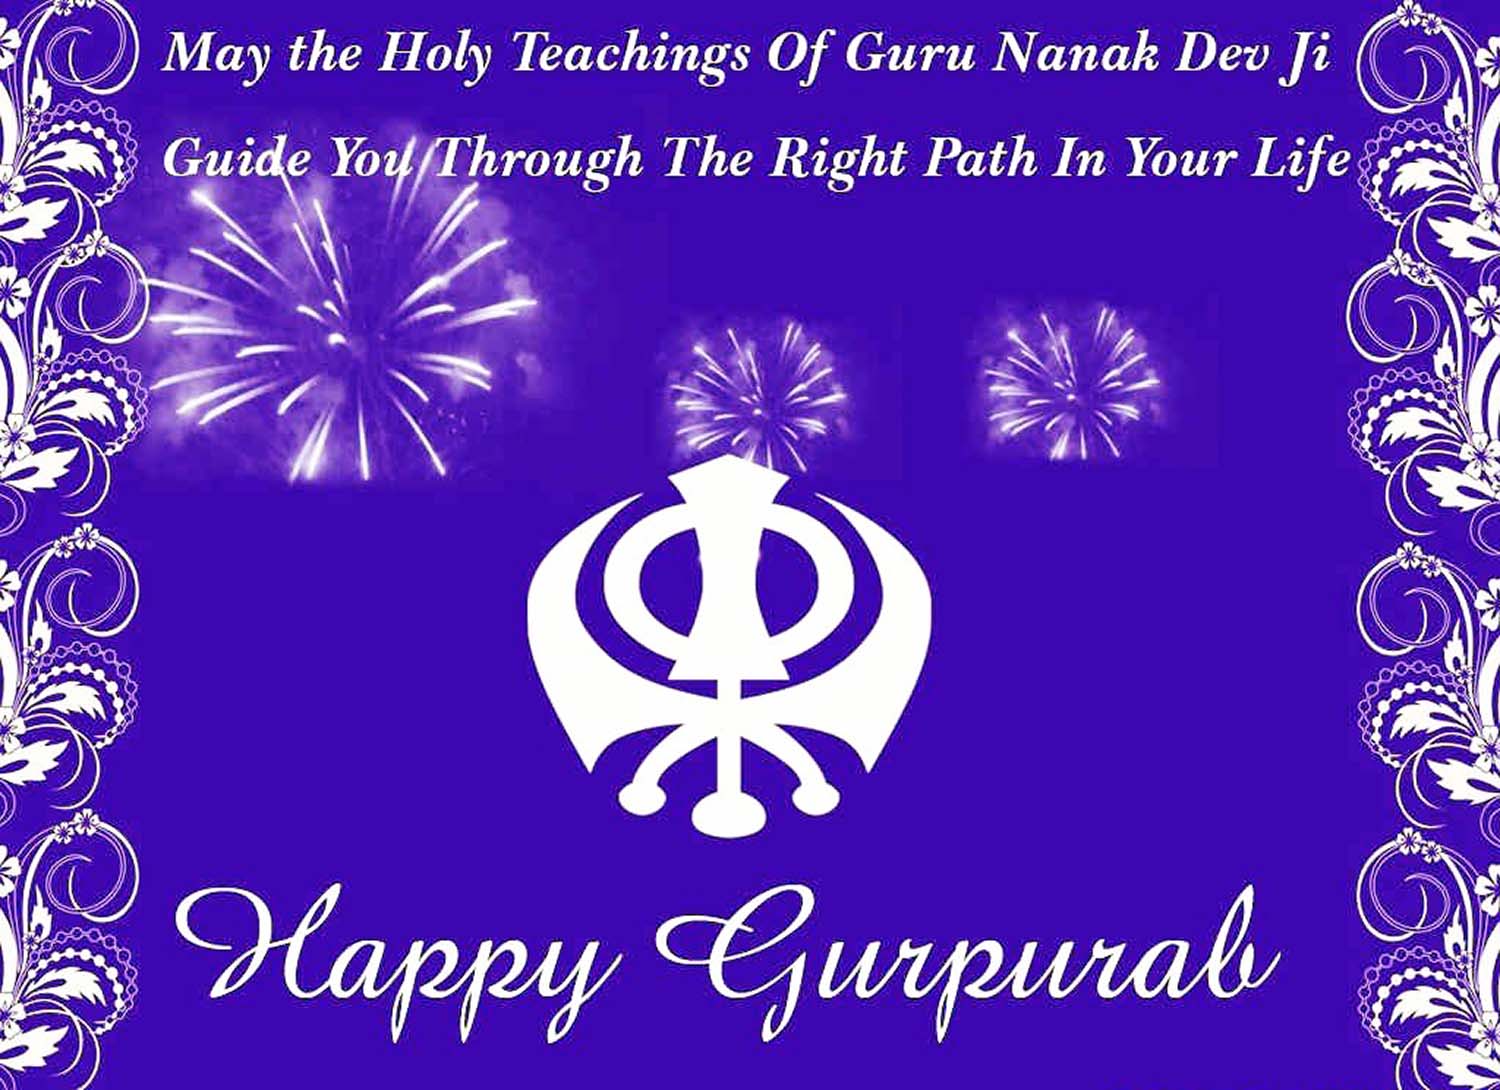 happy gurpurab wishes